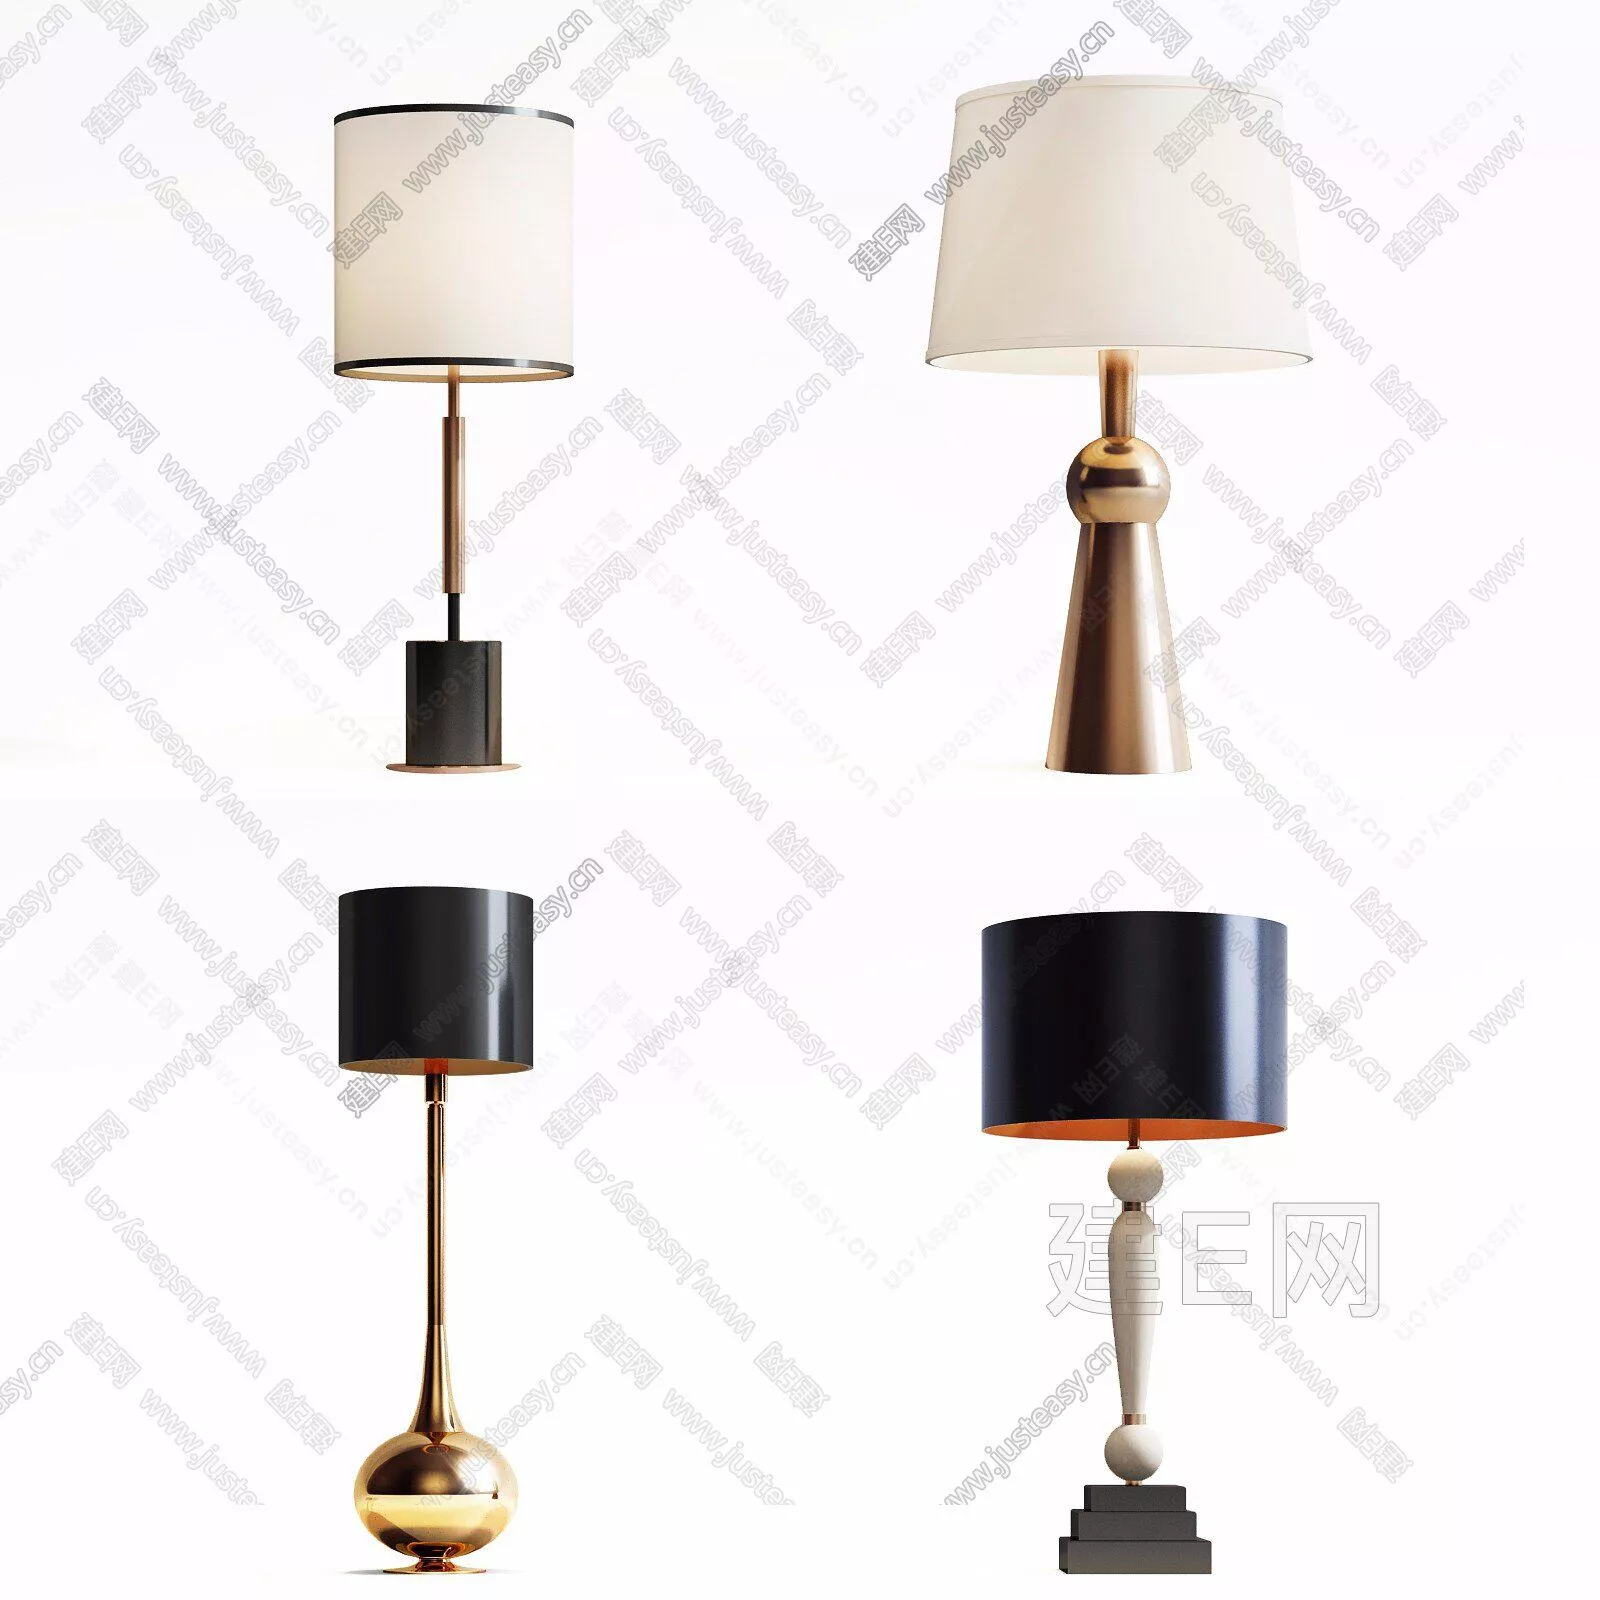 MODERN TABLE LAMP - SKETCHUP 3D MODEL - ENSCAPE - 112414082